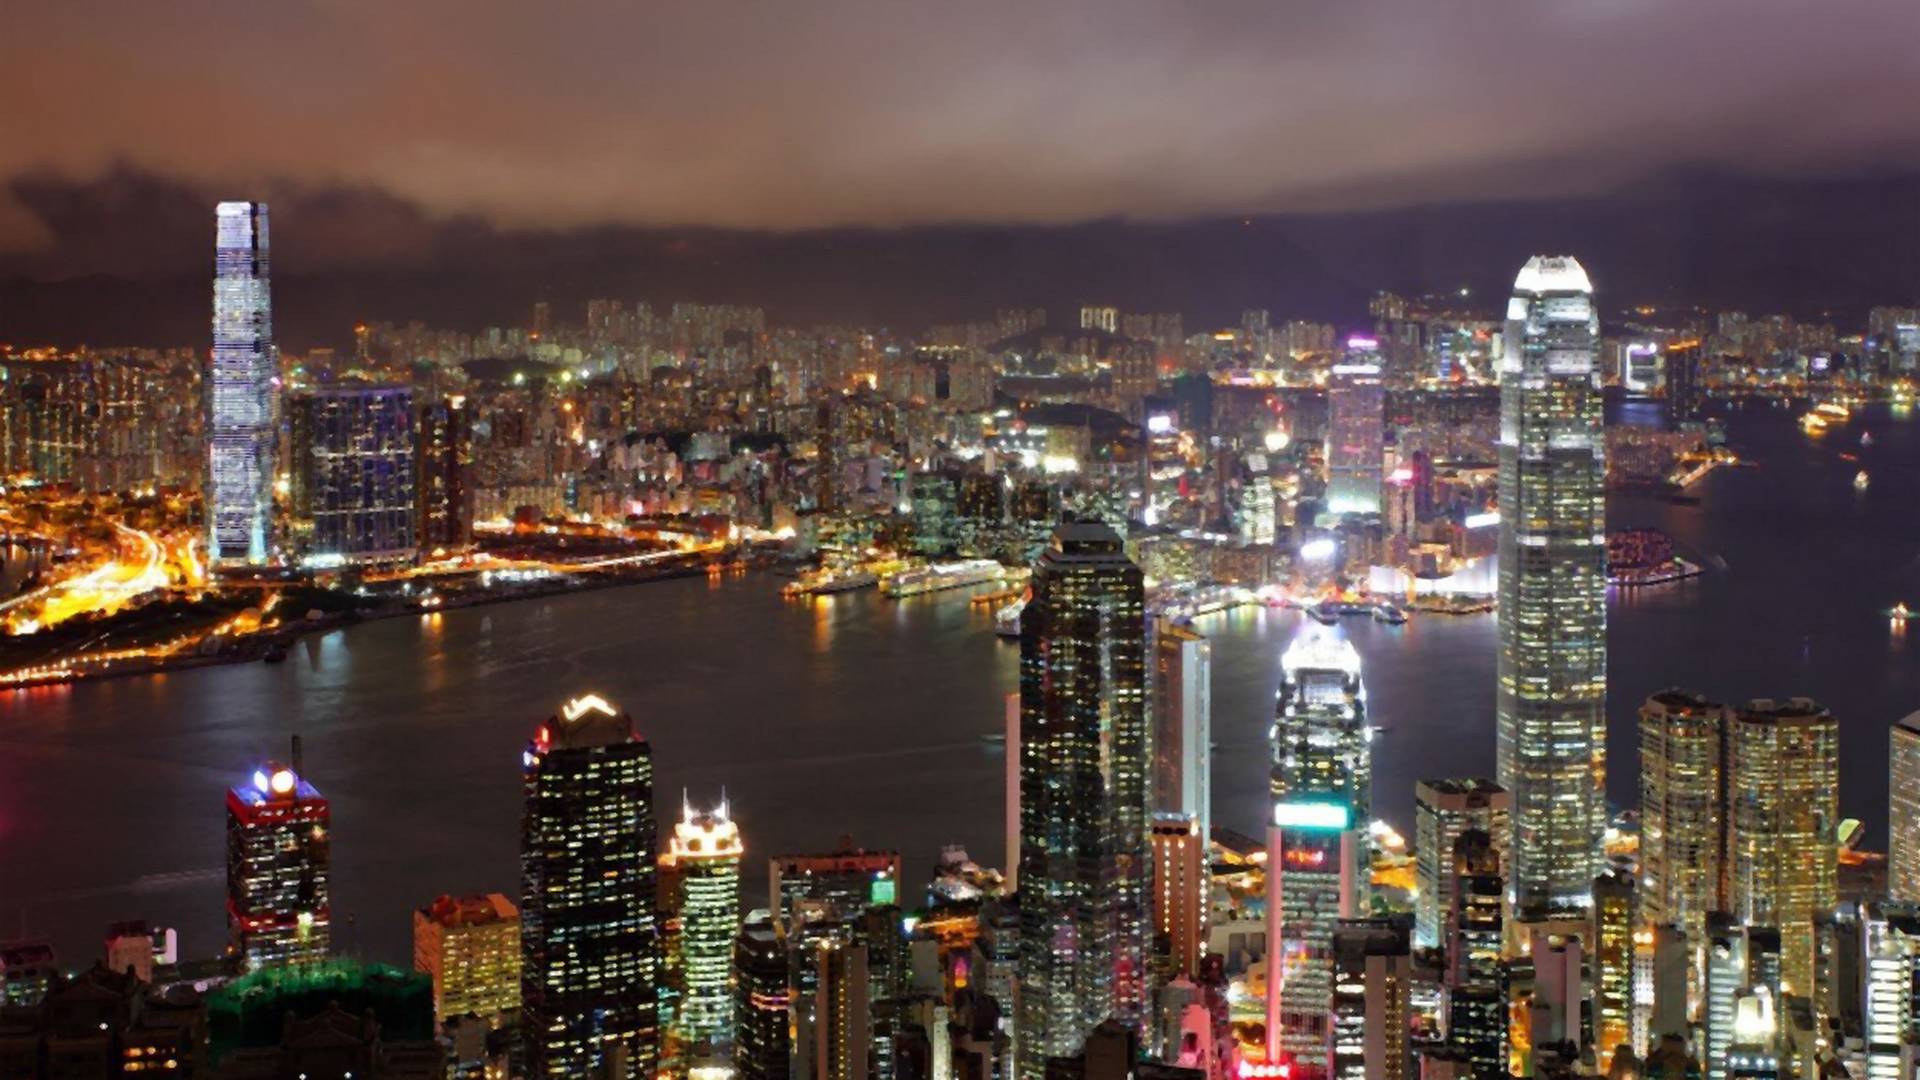 Hong Kong prešišao Njujork po broju najbogatijih ljudi na svetu